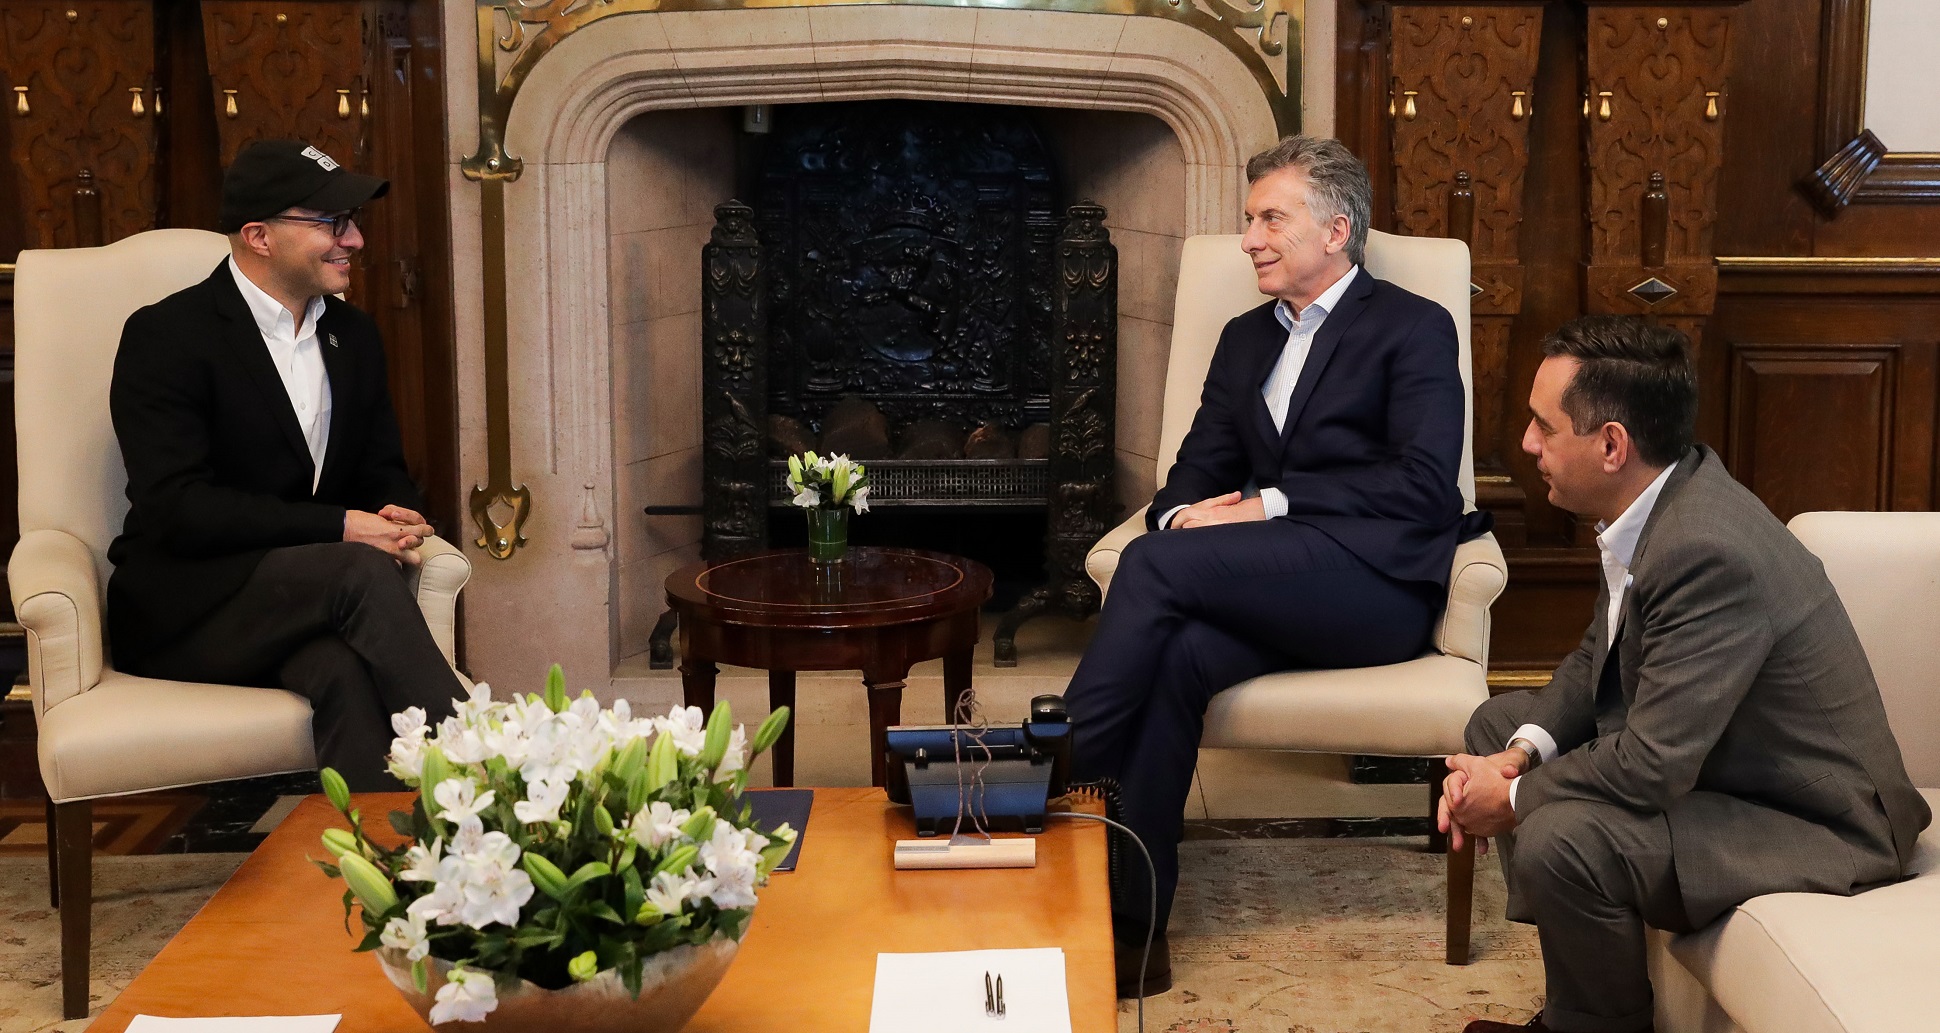 El presidente Mauricio Macri recibió al CEO y fundador de Code.org, Hadi Partovi